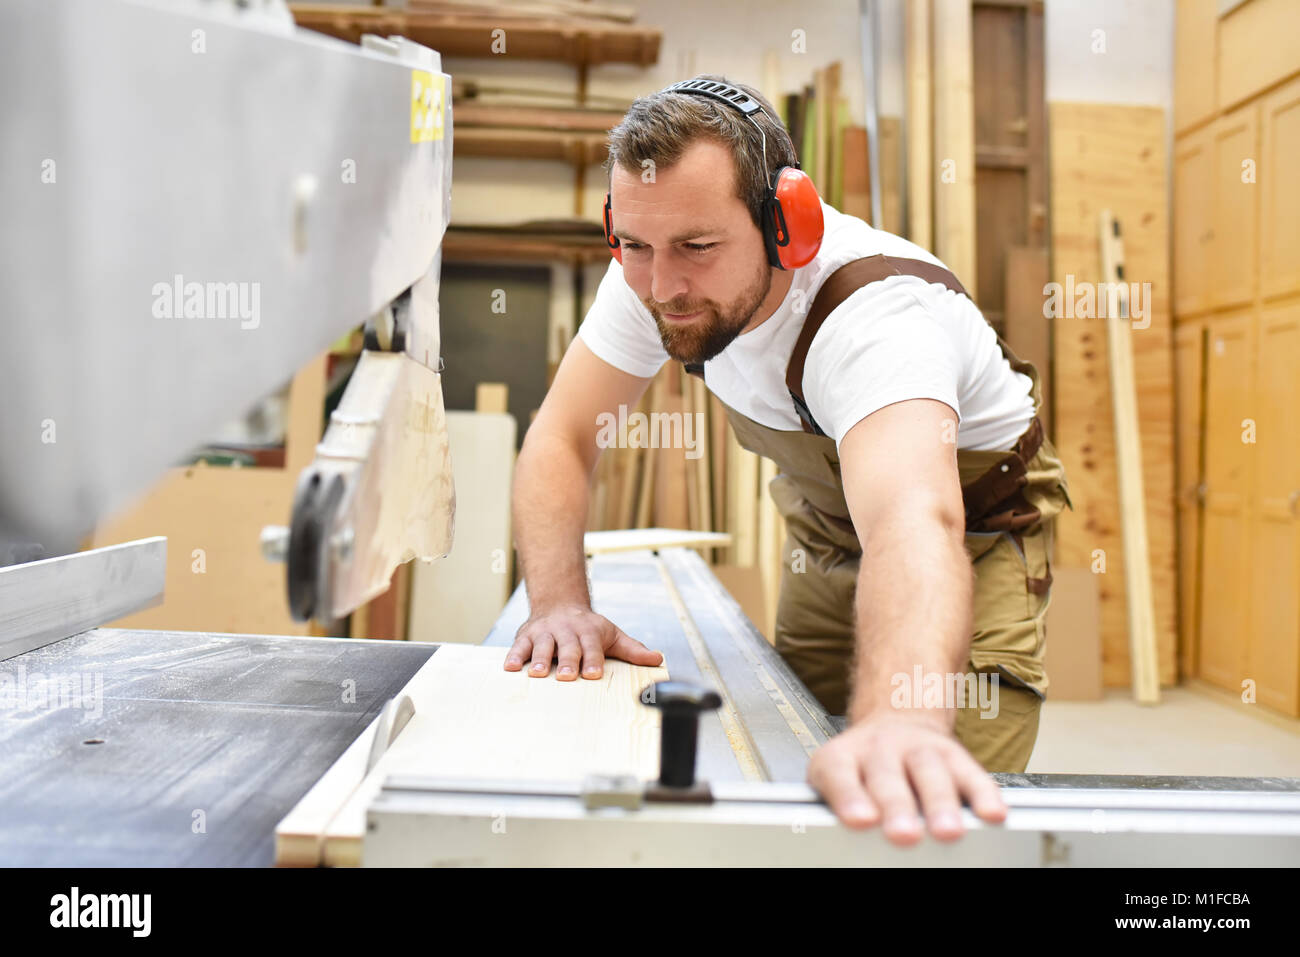 Amable carpintero con protectores y ropa de trabajo trabajando en una sierra en el taller Foto de stock